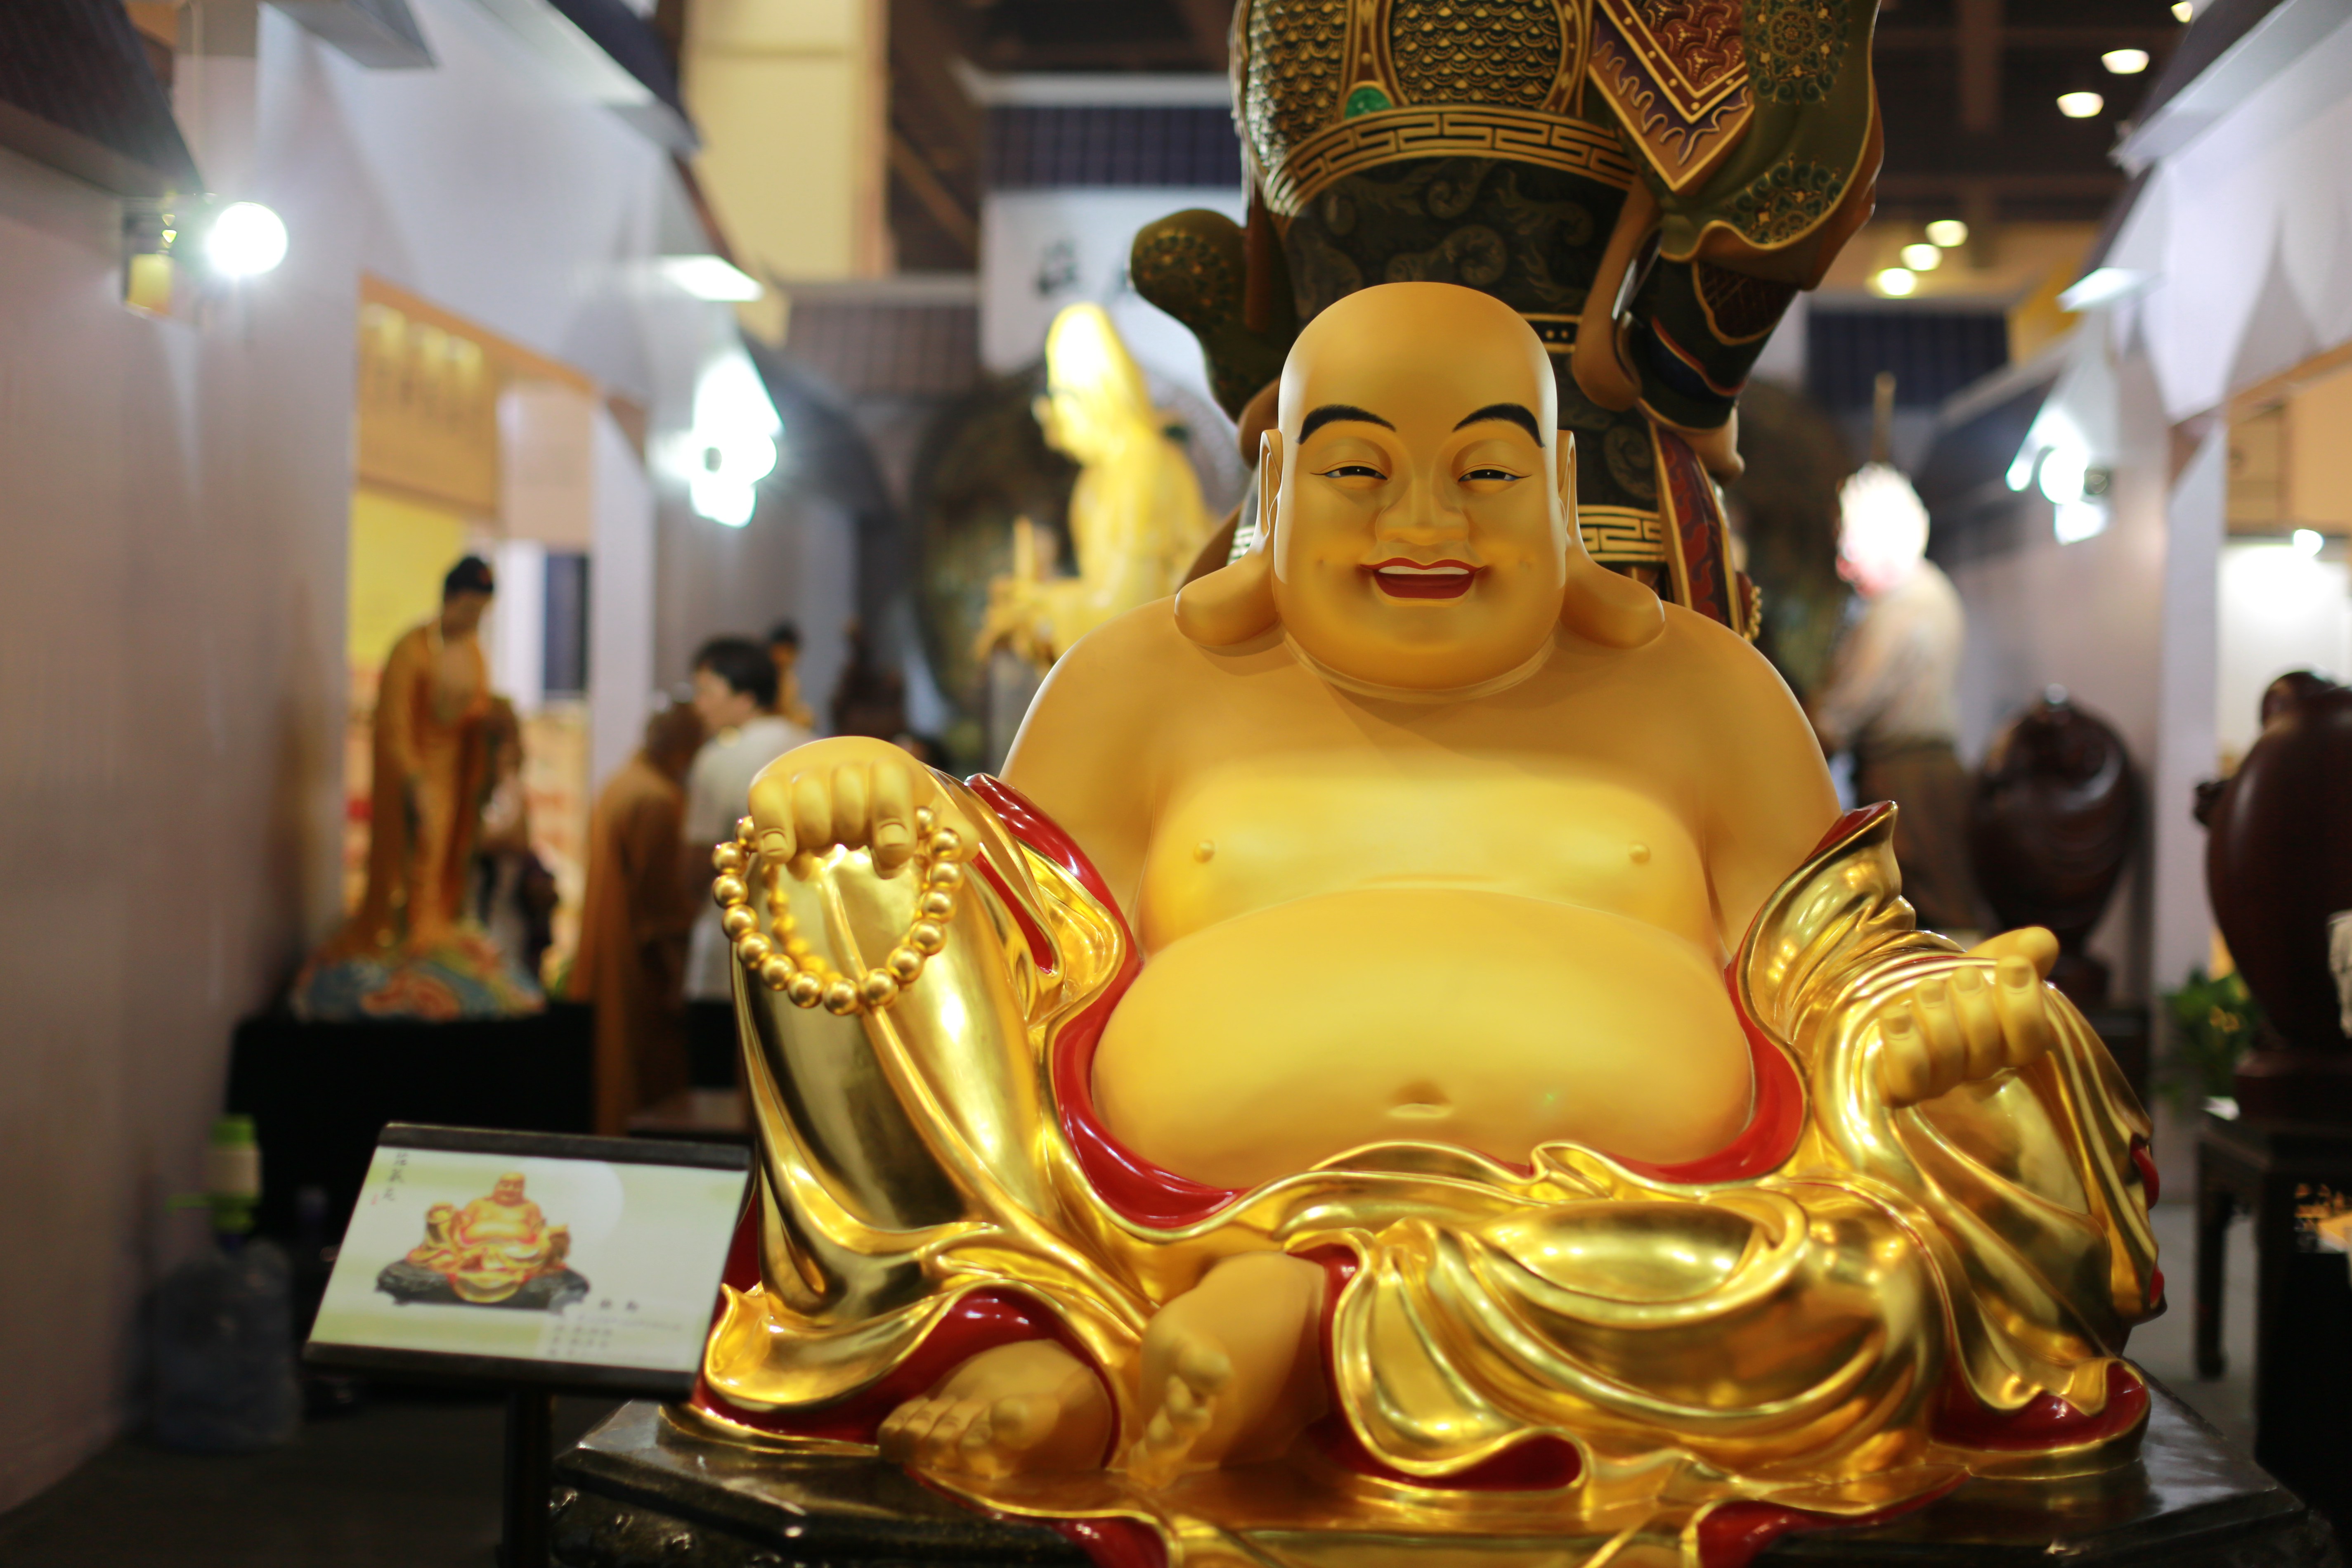 8月4日上午,为期四天的2017中原佛教文化暨佛事用品博览会在郑州国际